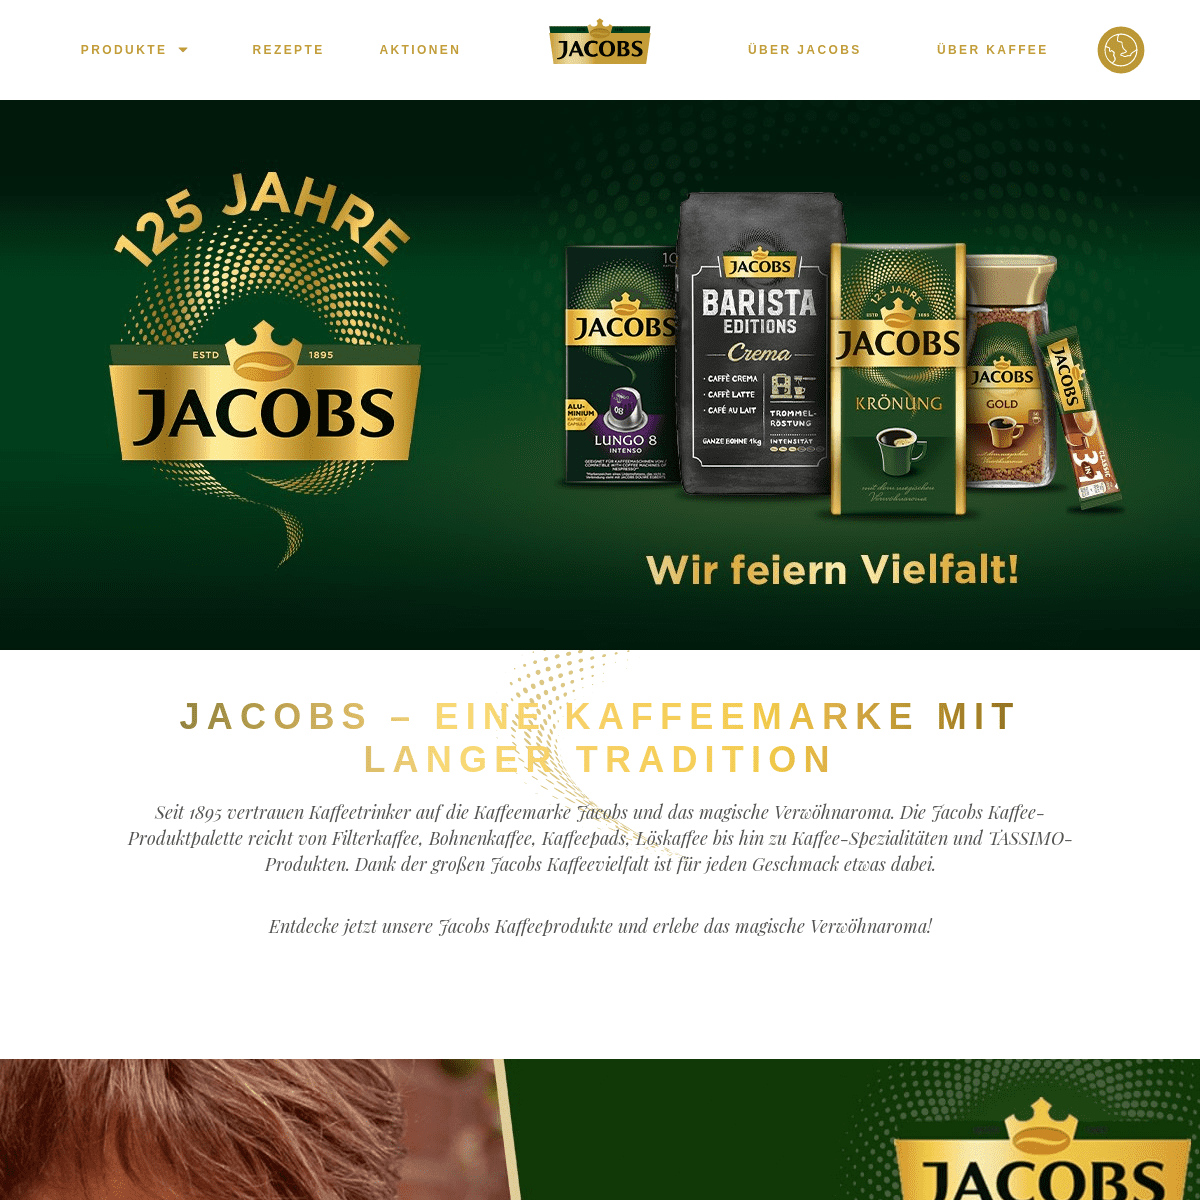 A complete backup of https://jacobskaffee.de